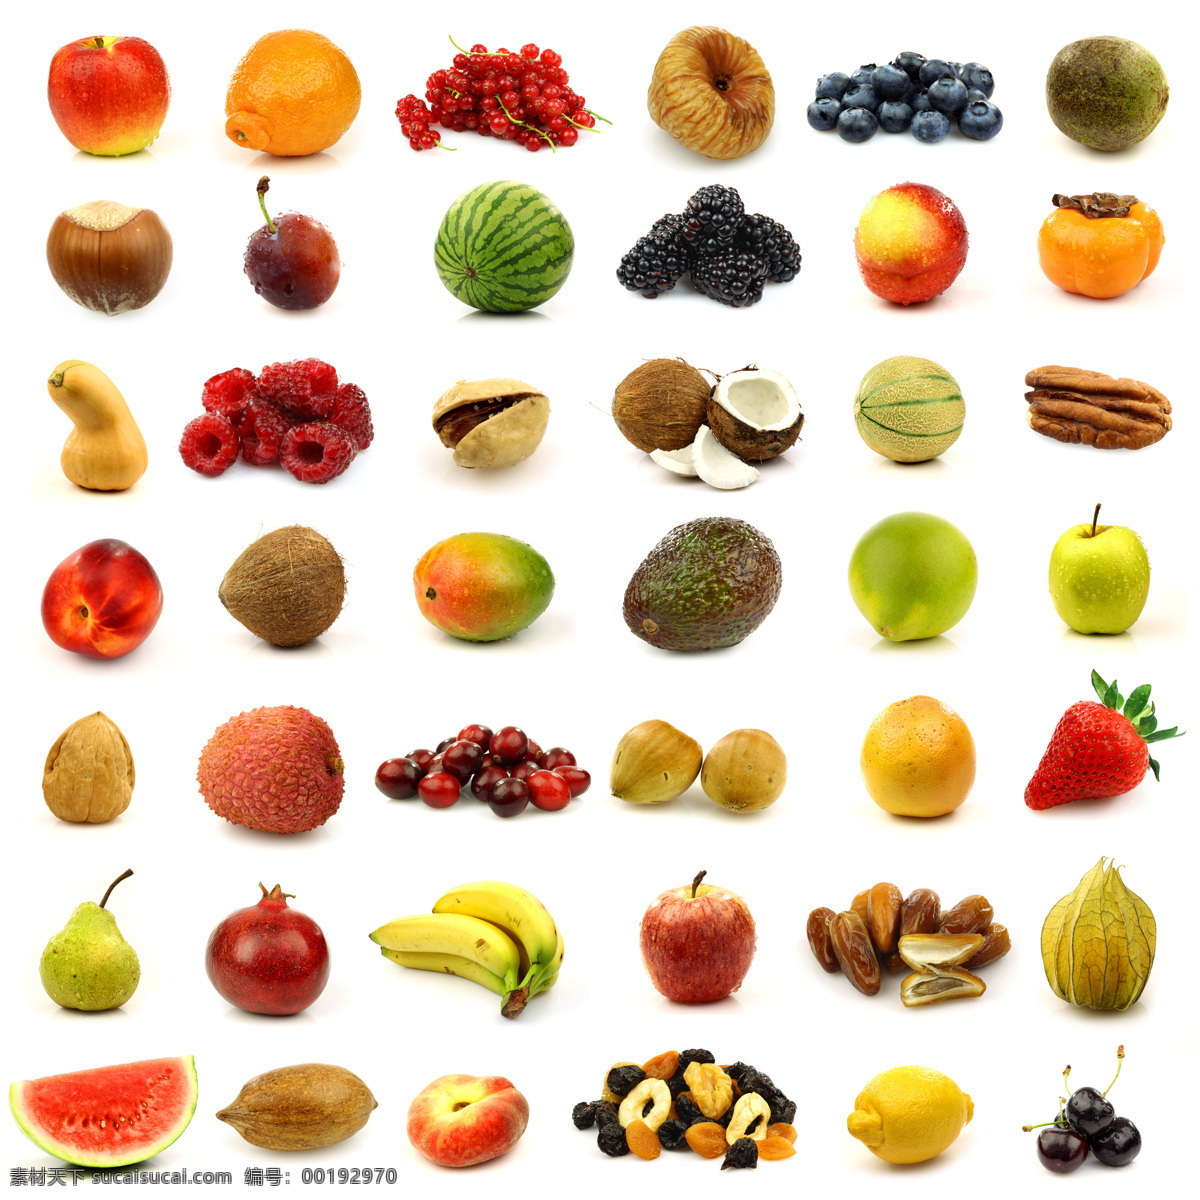 水果摄影素材 苹果 葡萄 桑甚 香蕉 西瓜 椰子 新鲜水果 水果 水果摄影 水果素材 水果广告 广告素材 水果蔬菜 餐饮美食 白色